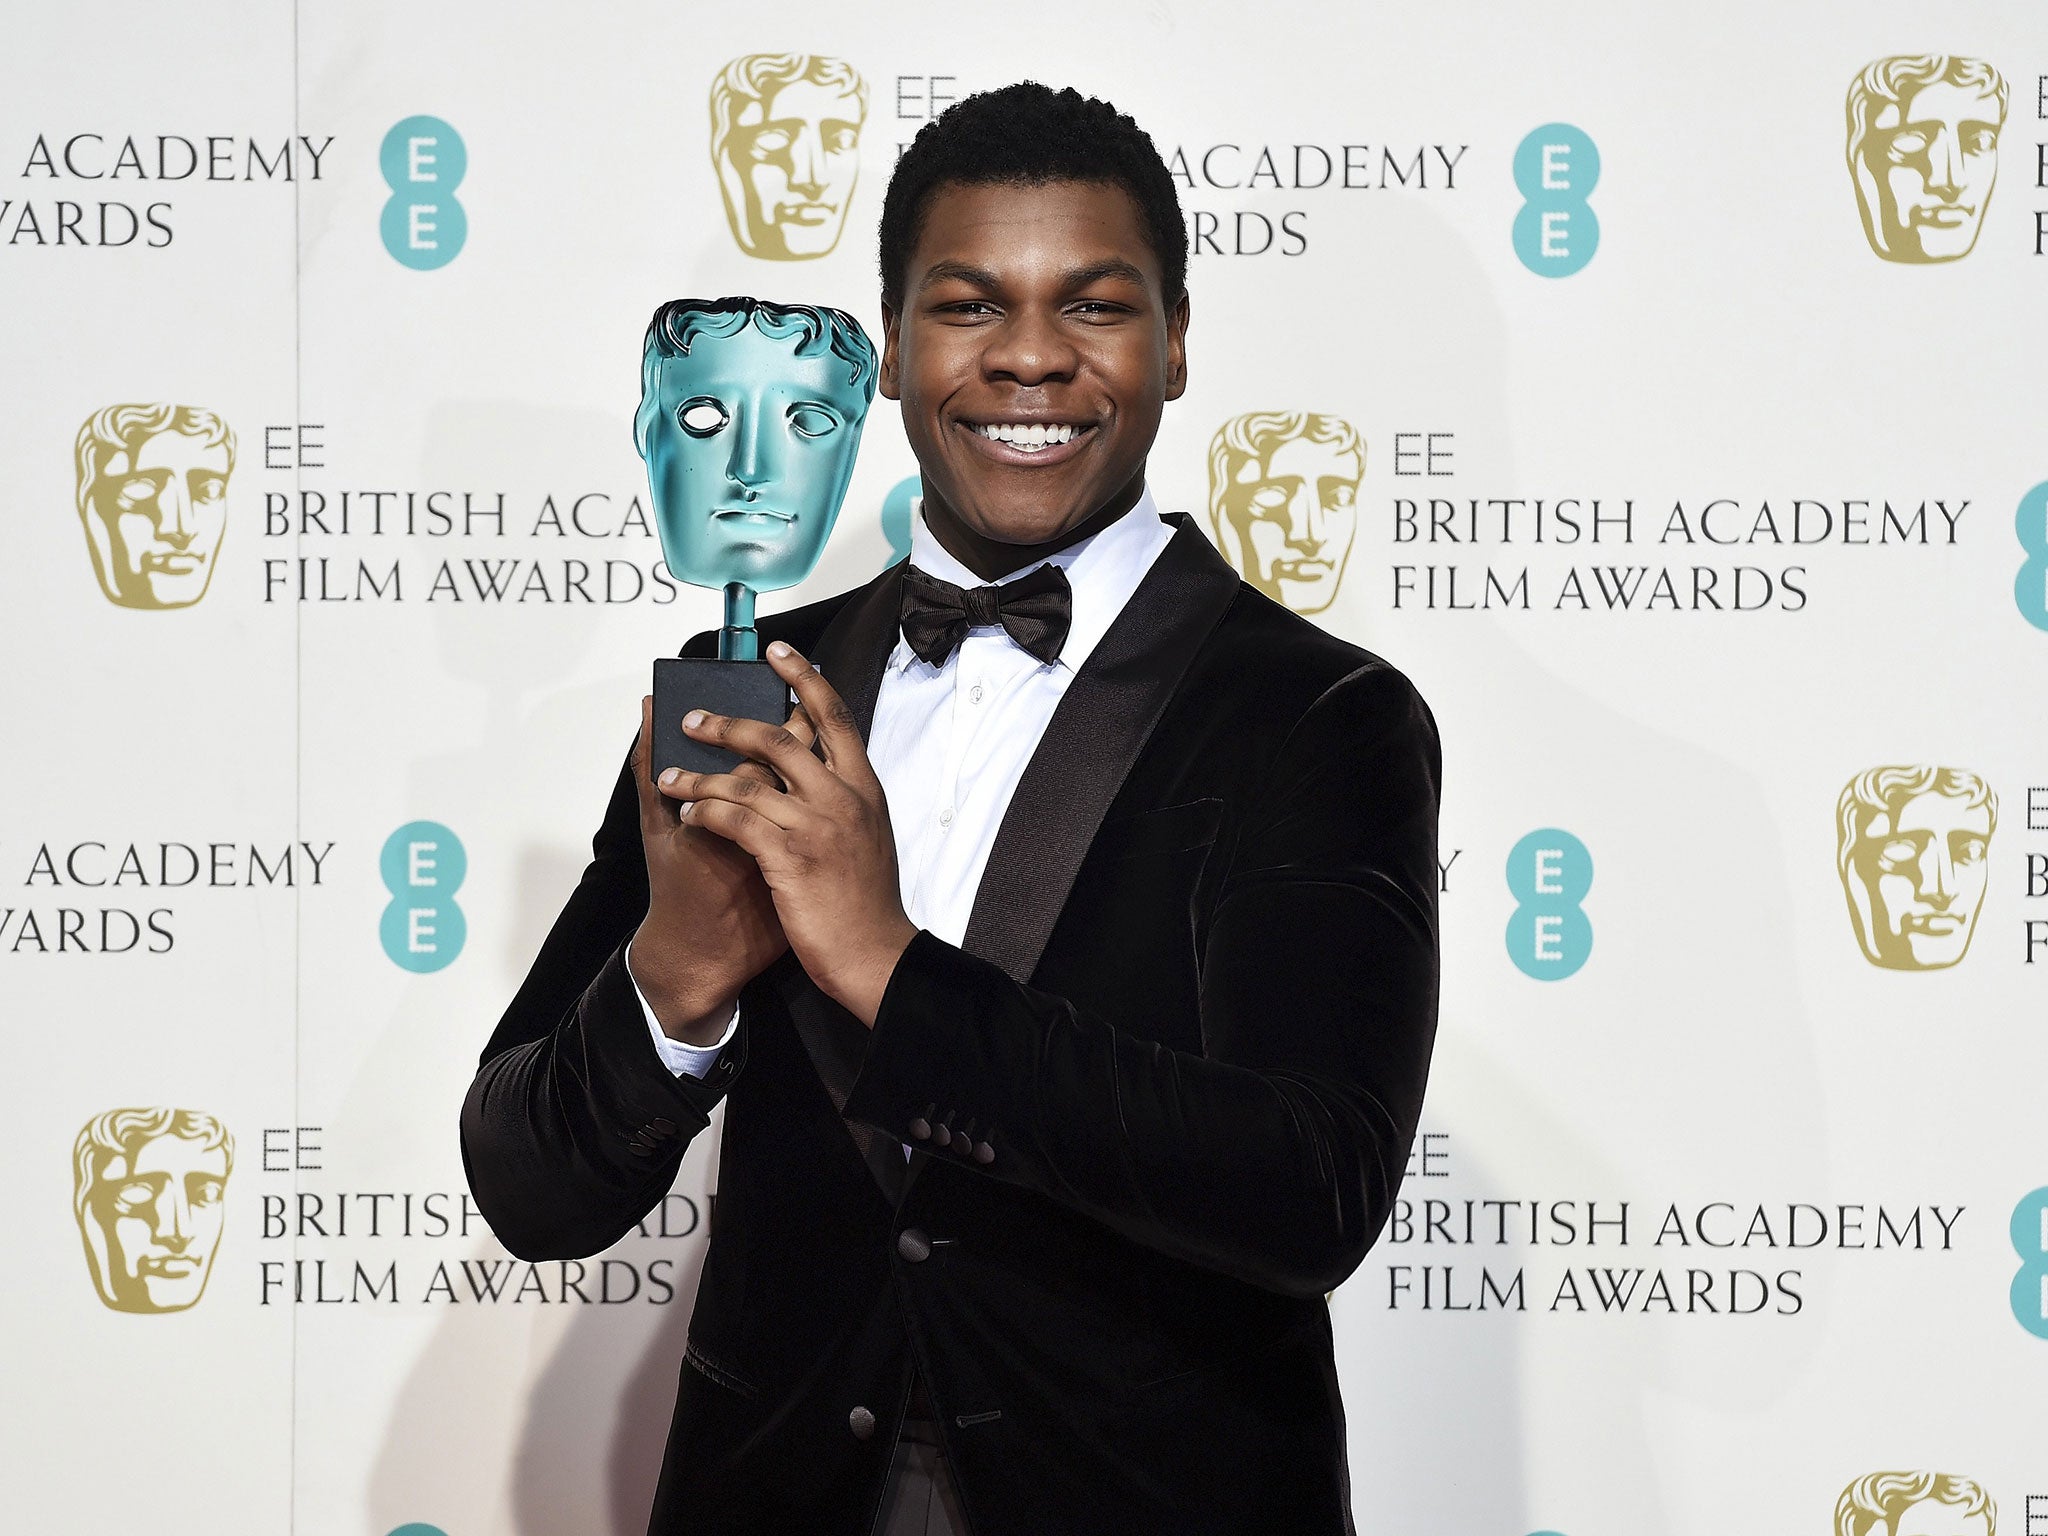 BAFTA winner John Boyega joins several British stars on the Academy's list of new members, including Mark Rylance, Tom Hiddleston and Kate Beckinsale